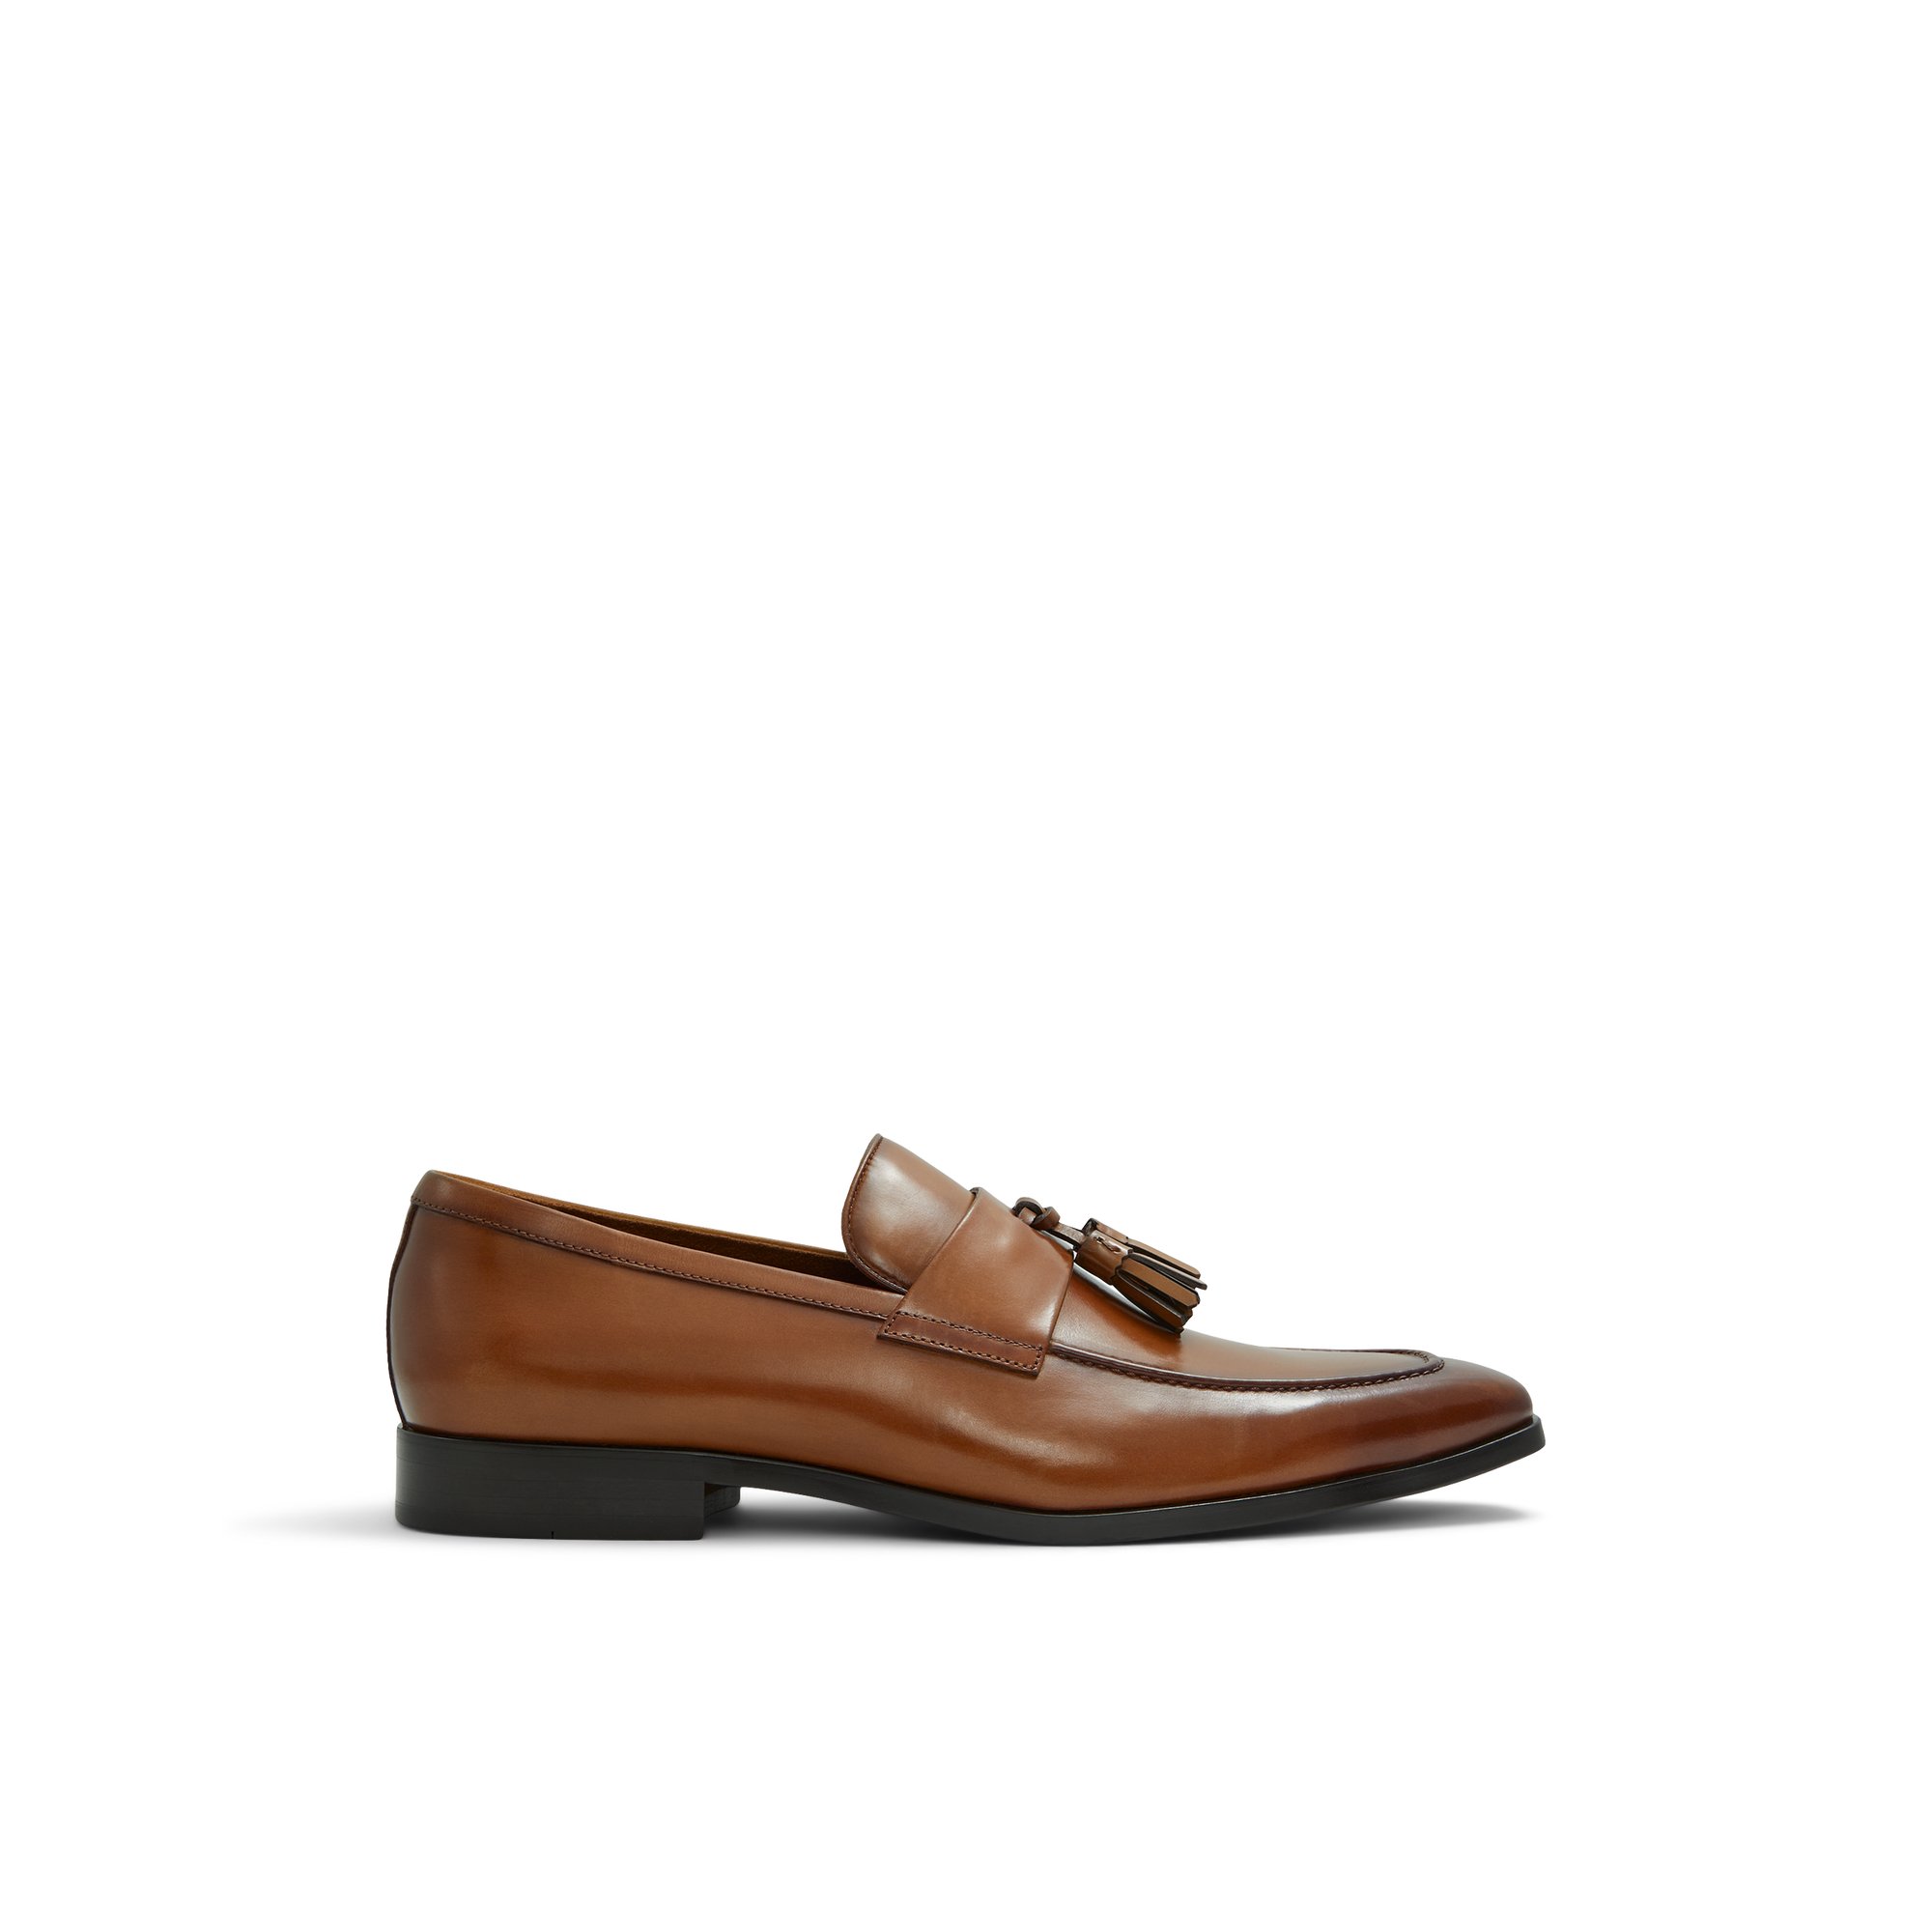 ALDO Vinci - Men's Loafers and Slip on - Brown